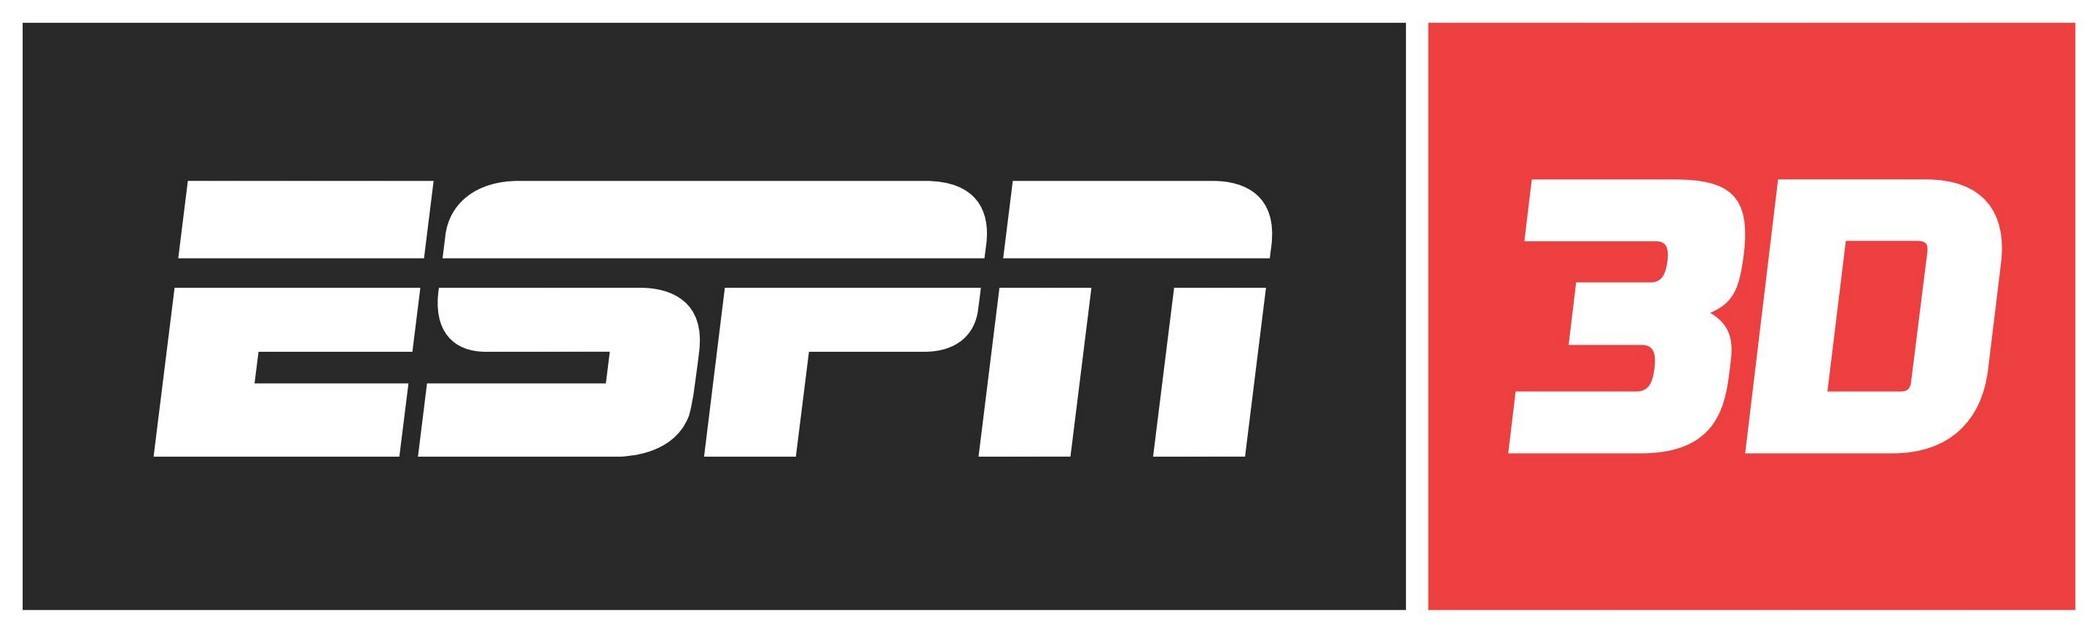 ESPN 3D Logo png